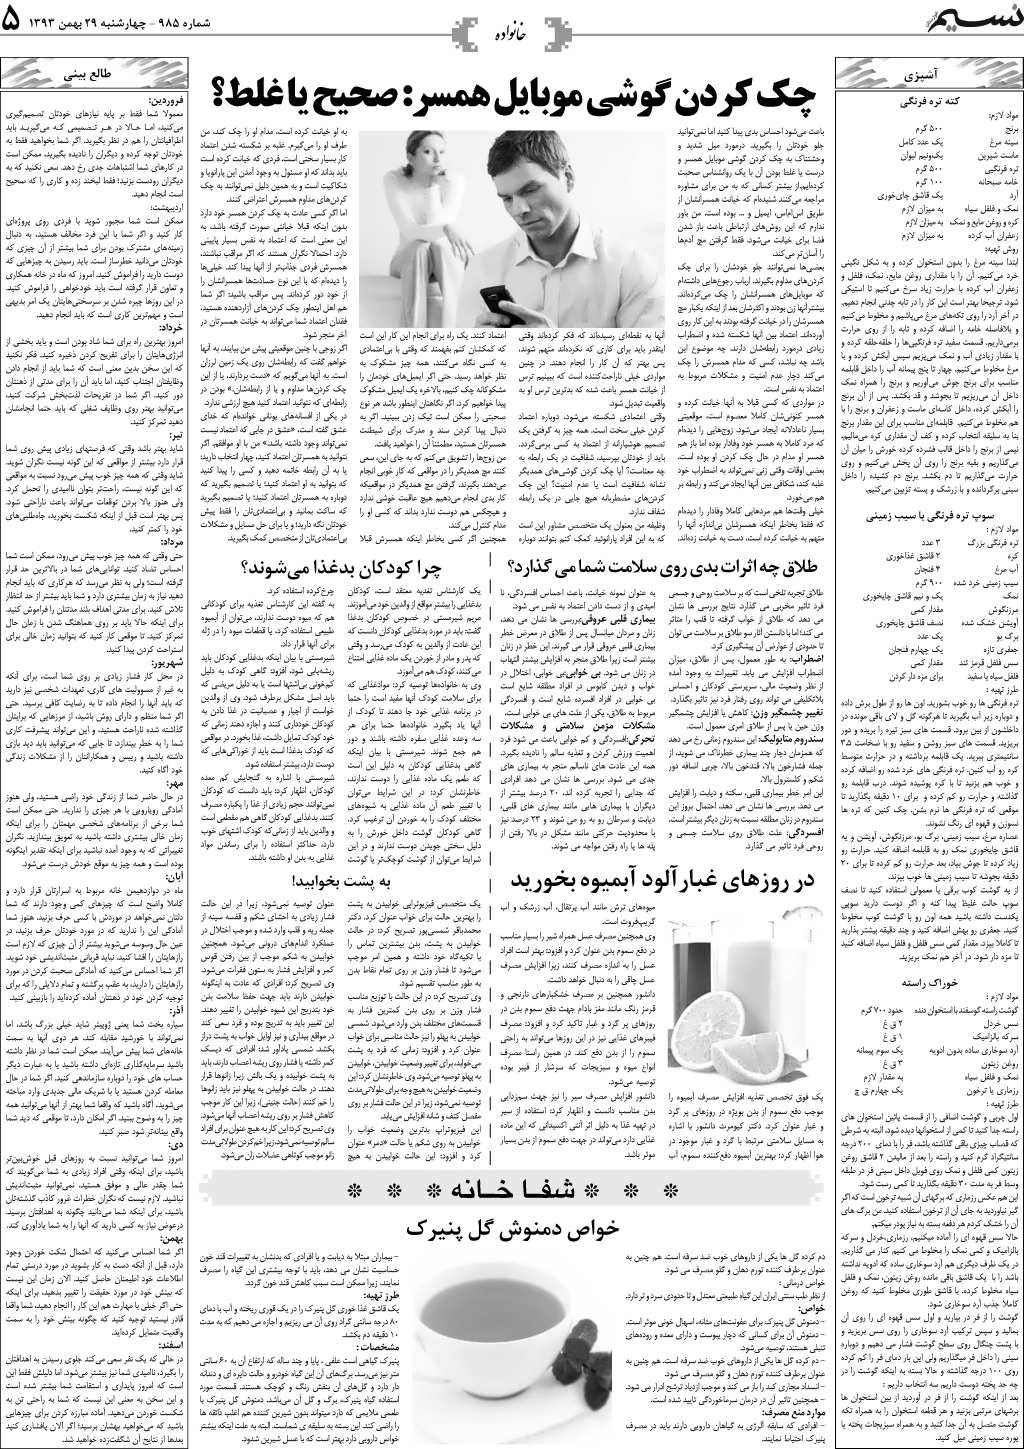 صفحه خانواده روزنامه نسیم شماره 985